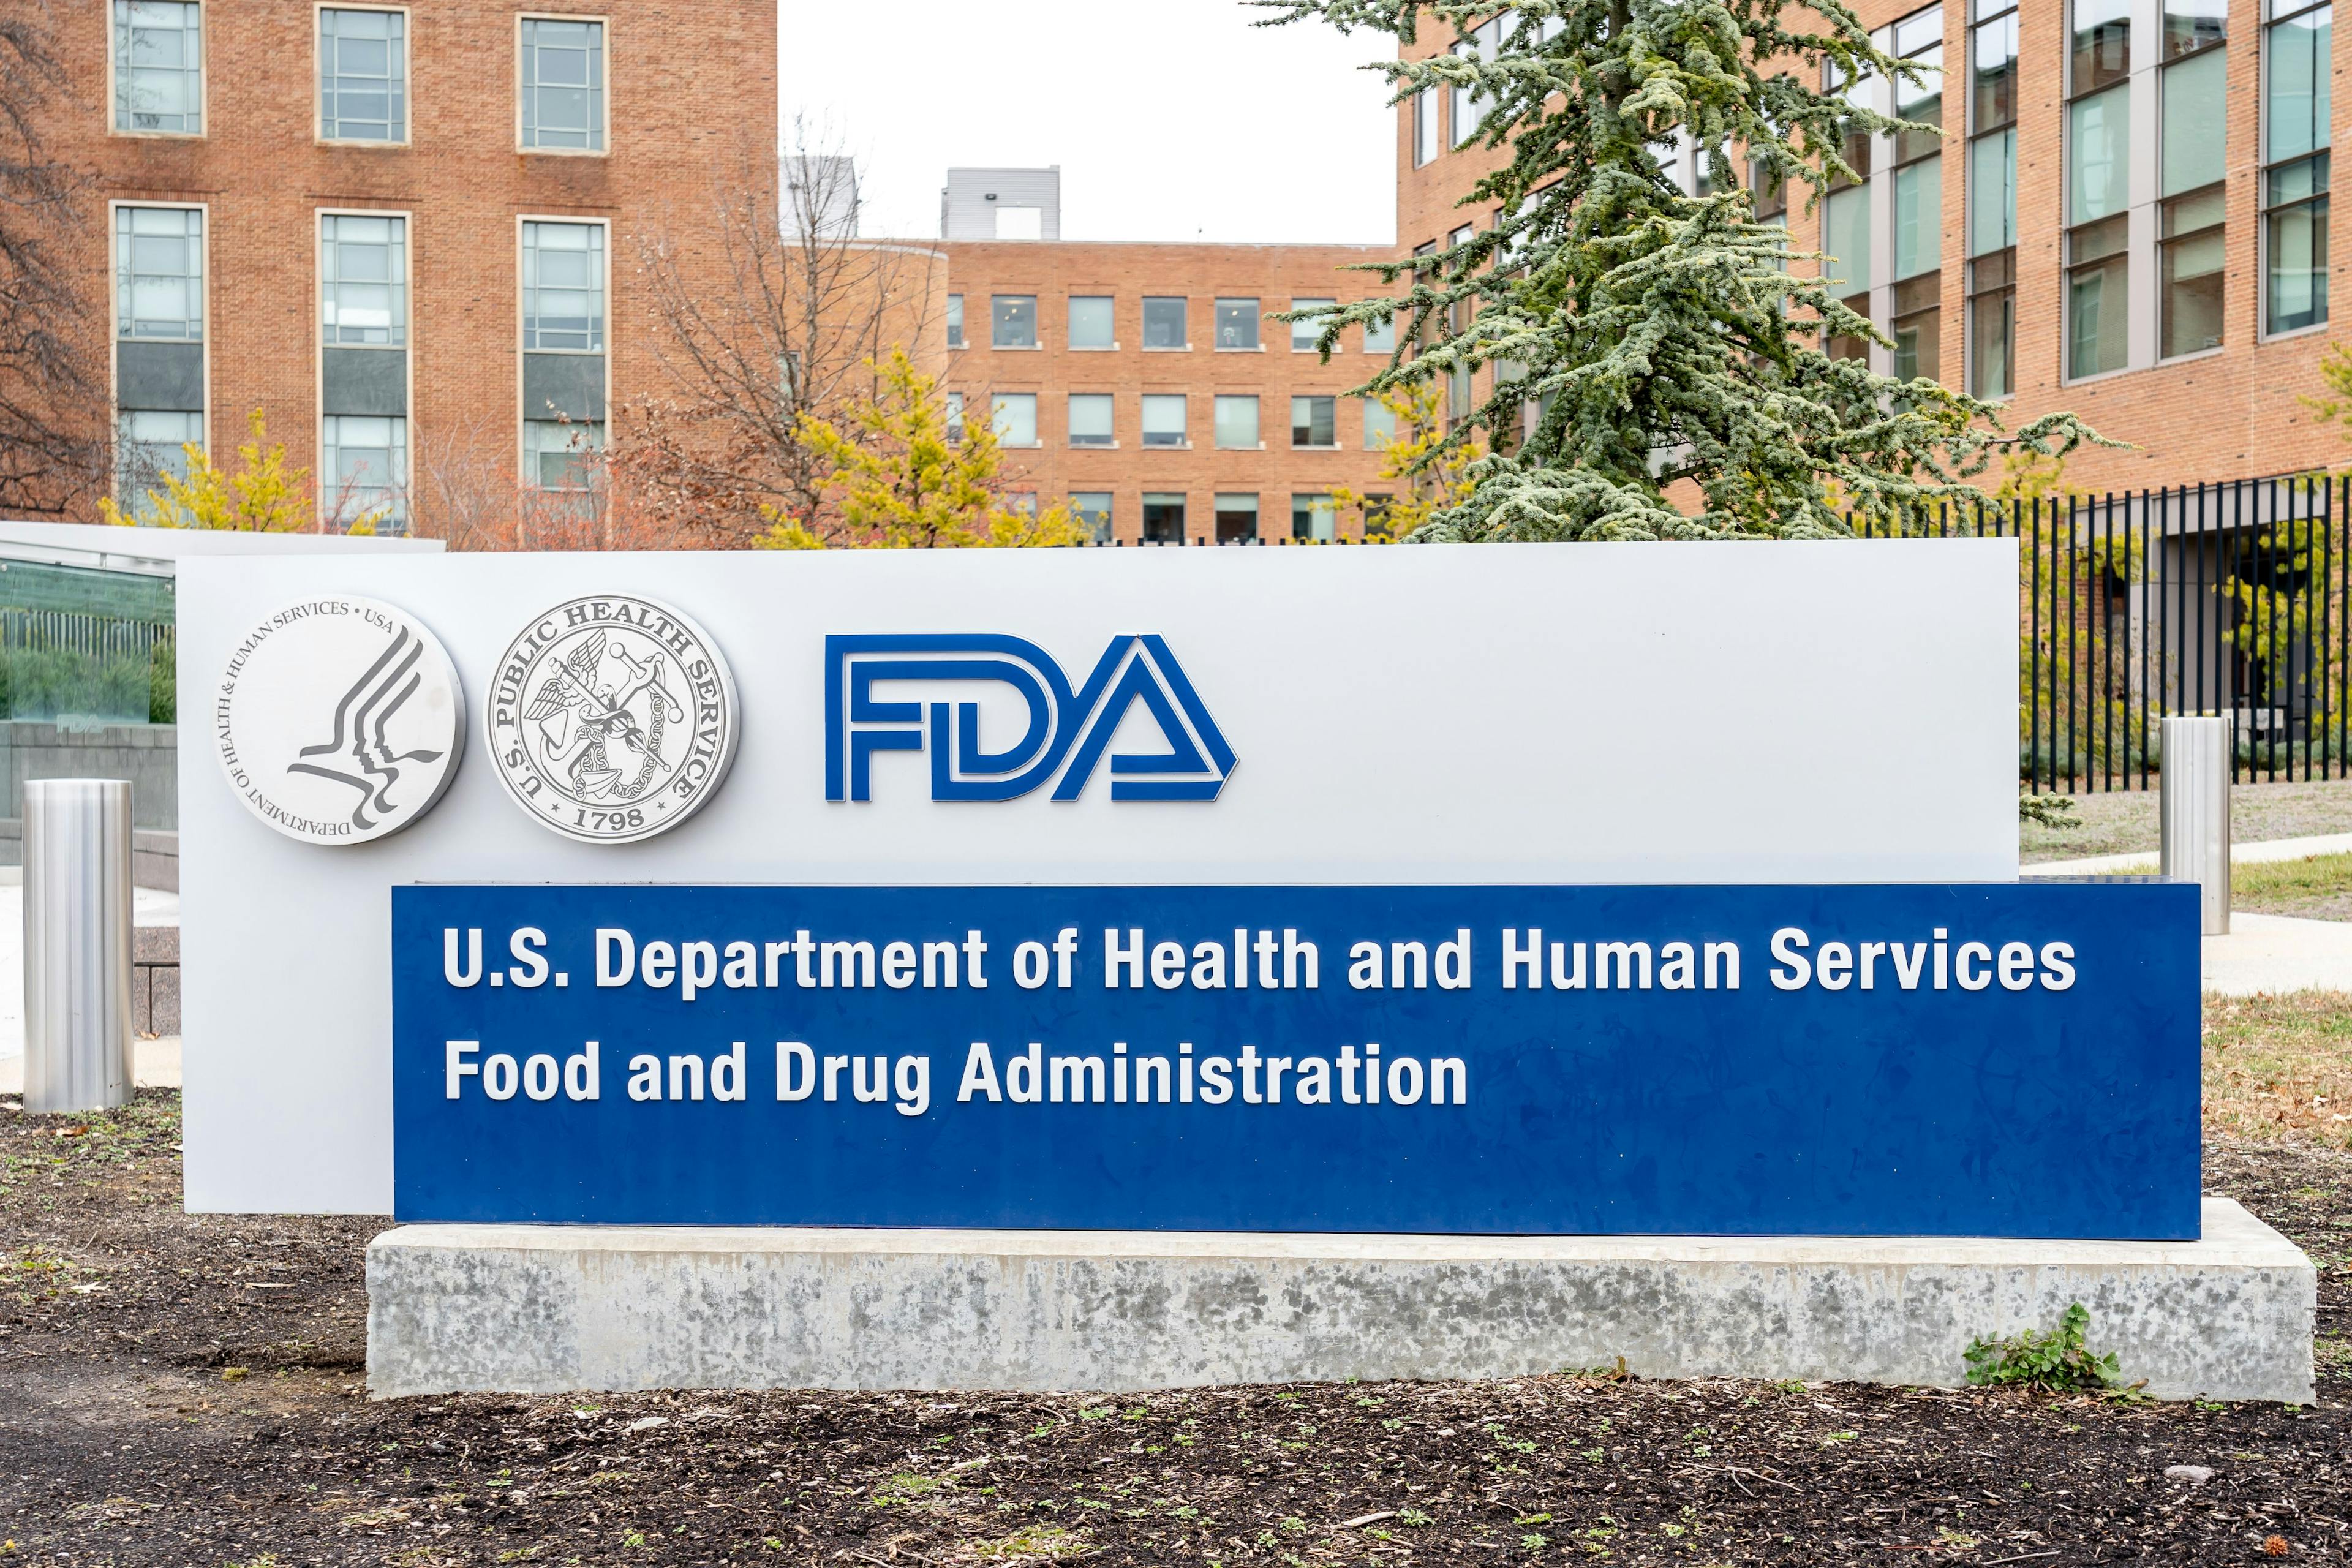  Robert Califf Confirmed as New Head of FDA